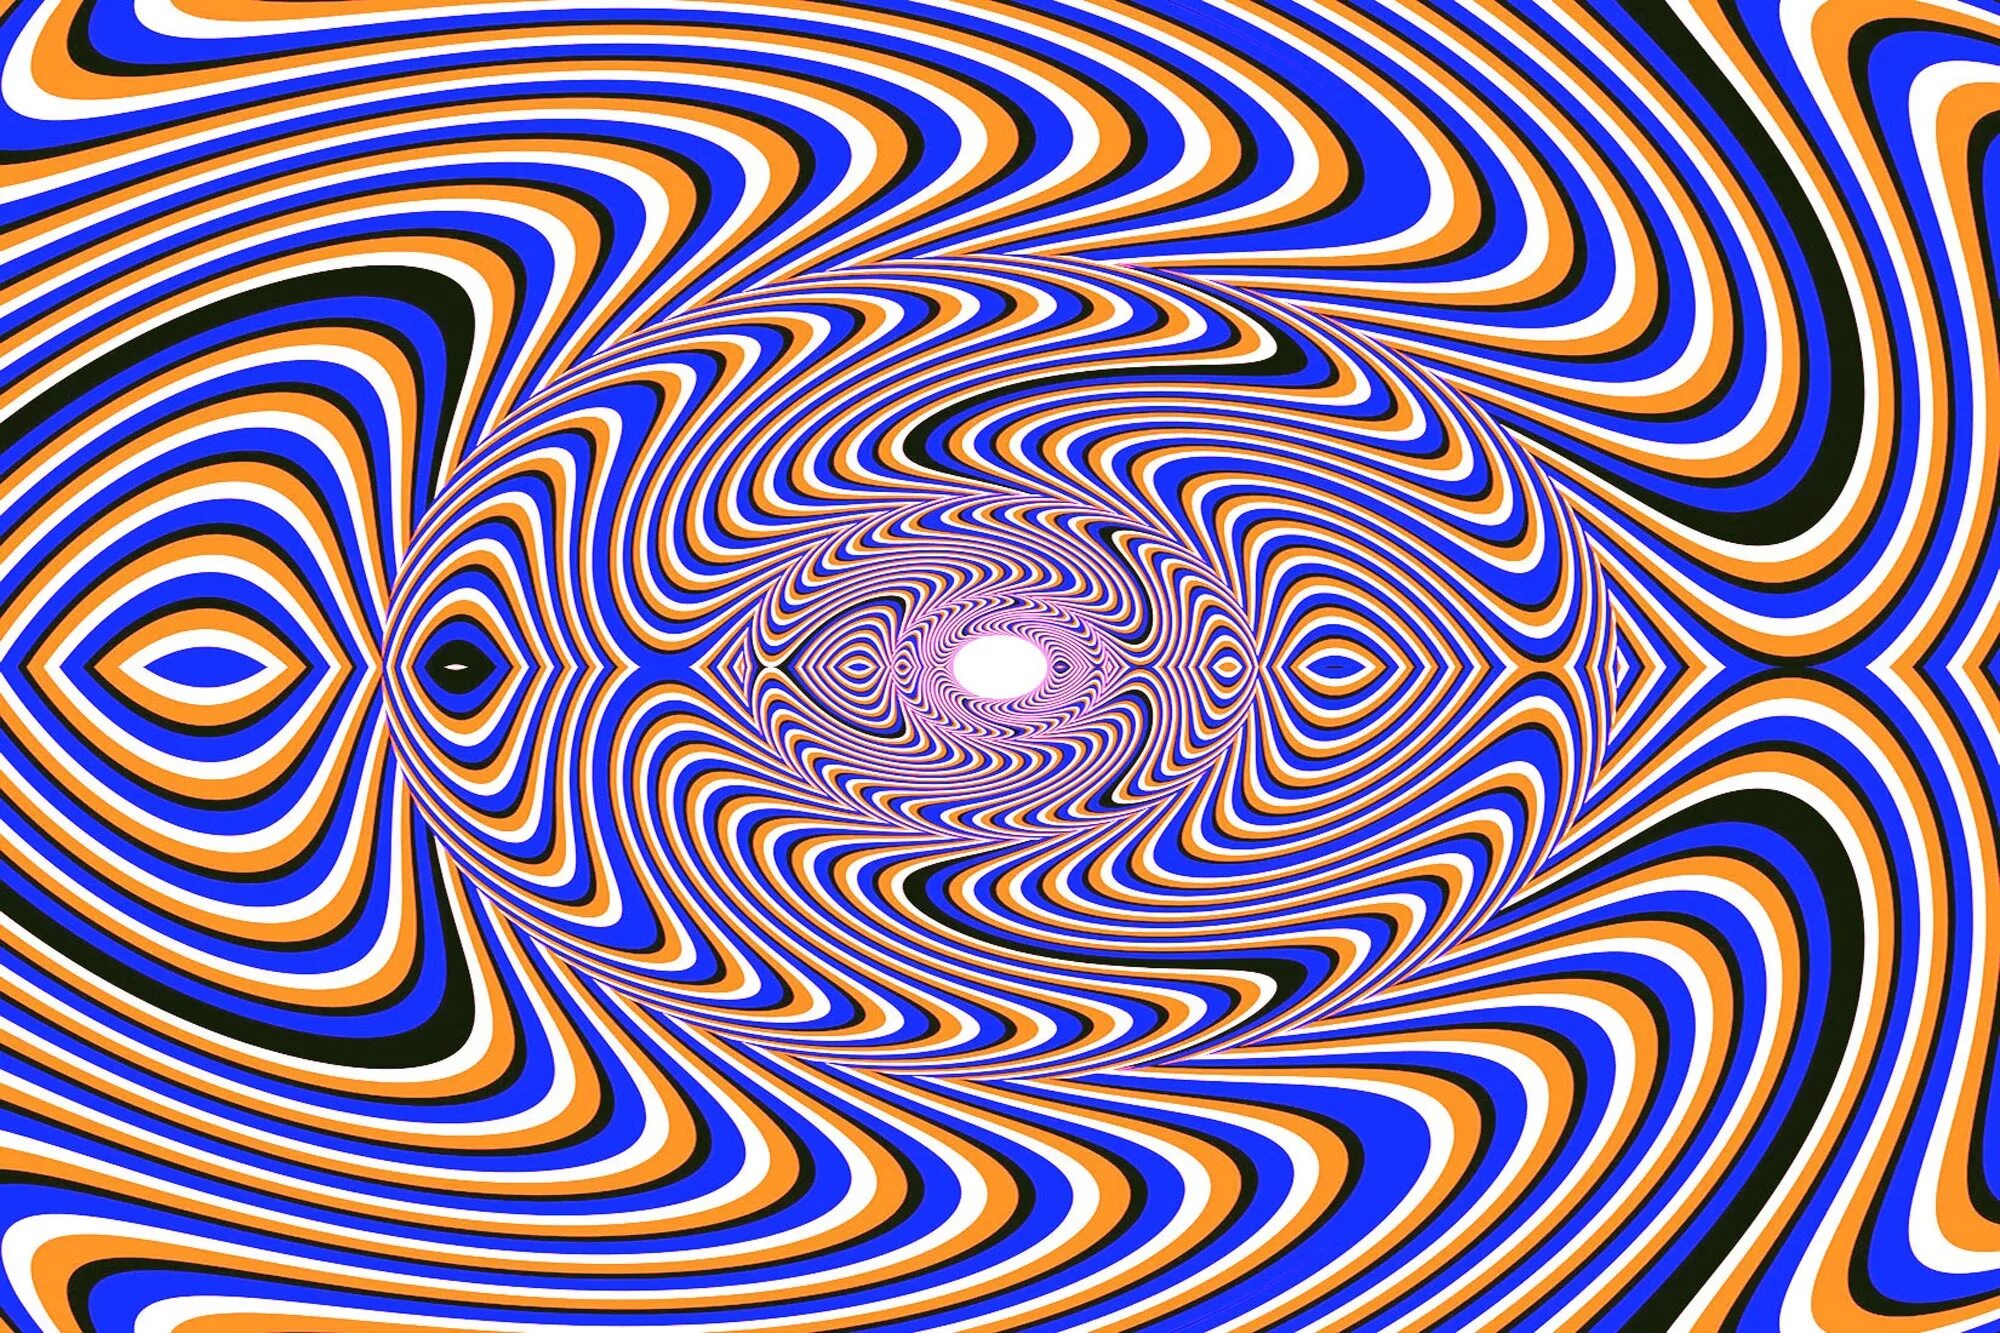 Обмануть зрение. «Оптические иллюзии» (Автор Джейкобс ПЭТ). Оптикал Иллюжн. Иллюзия. Обман зрения.